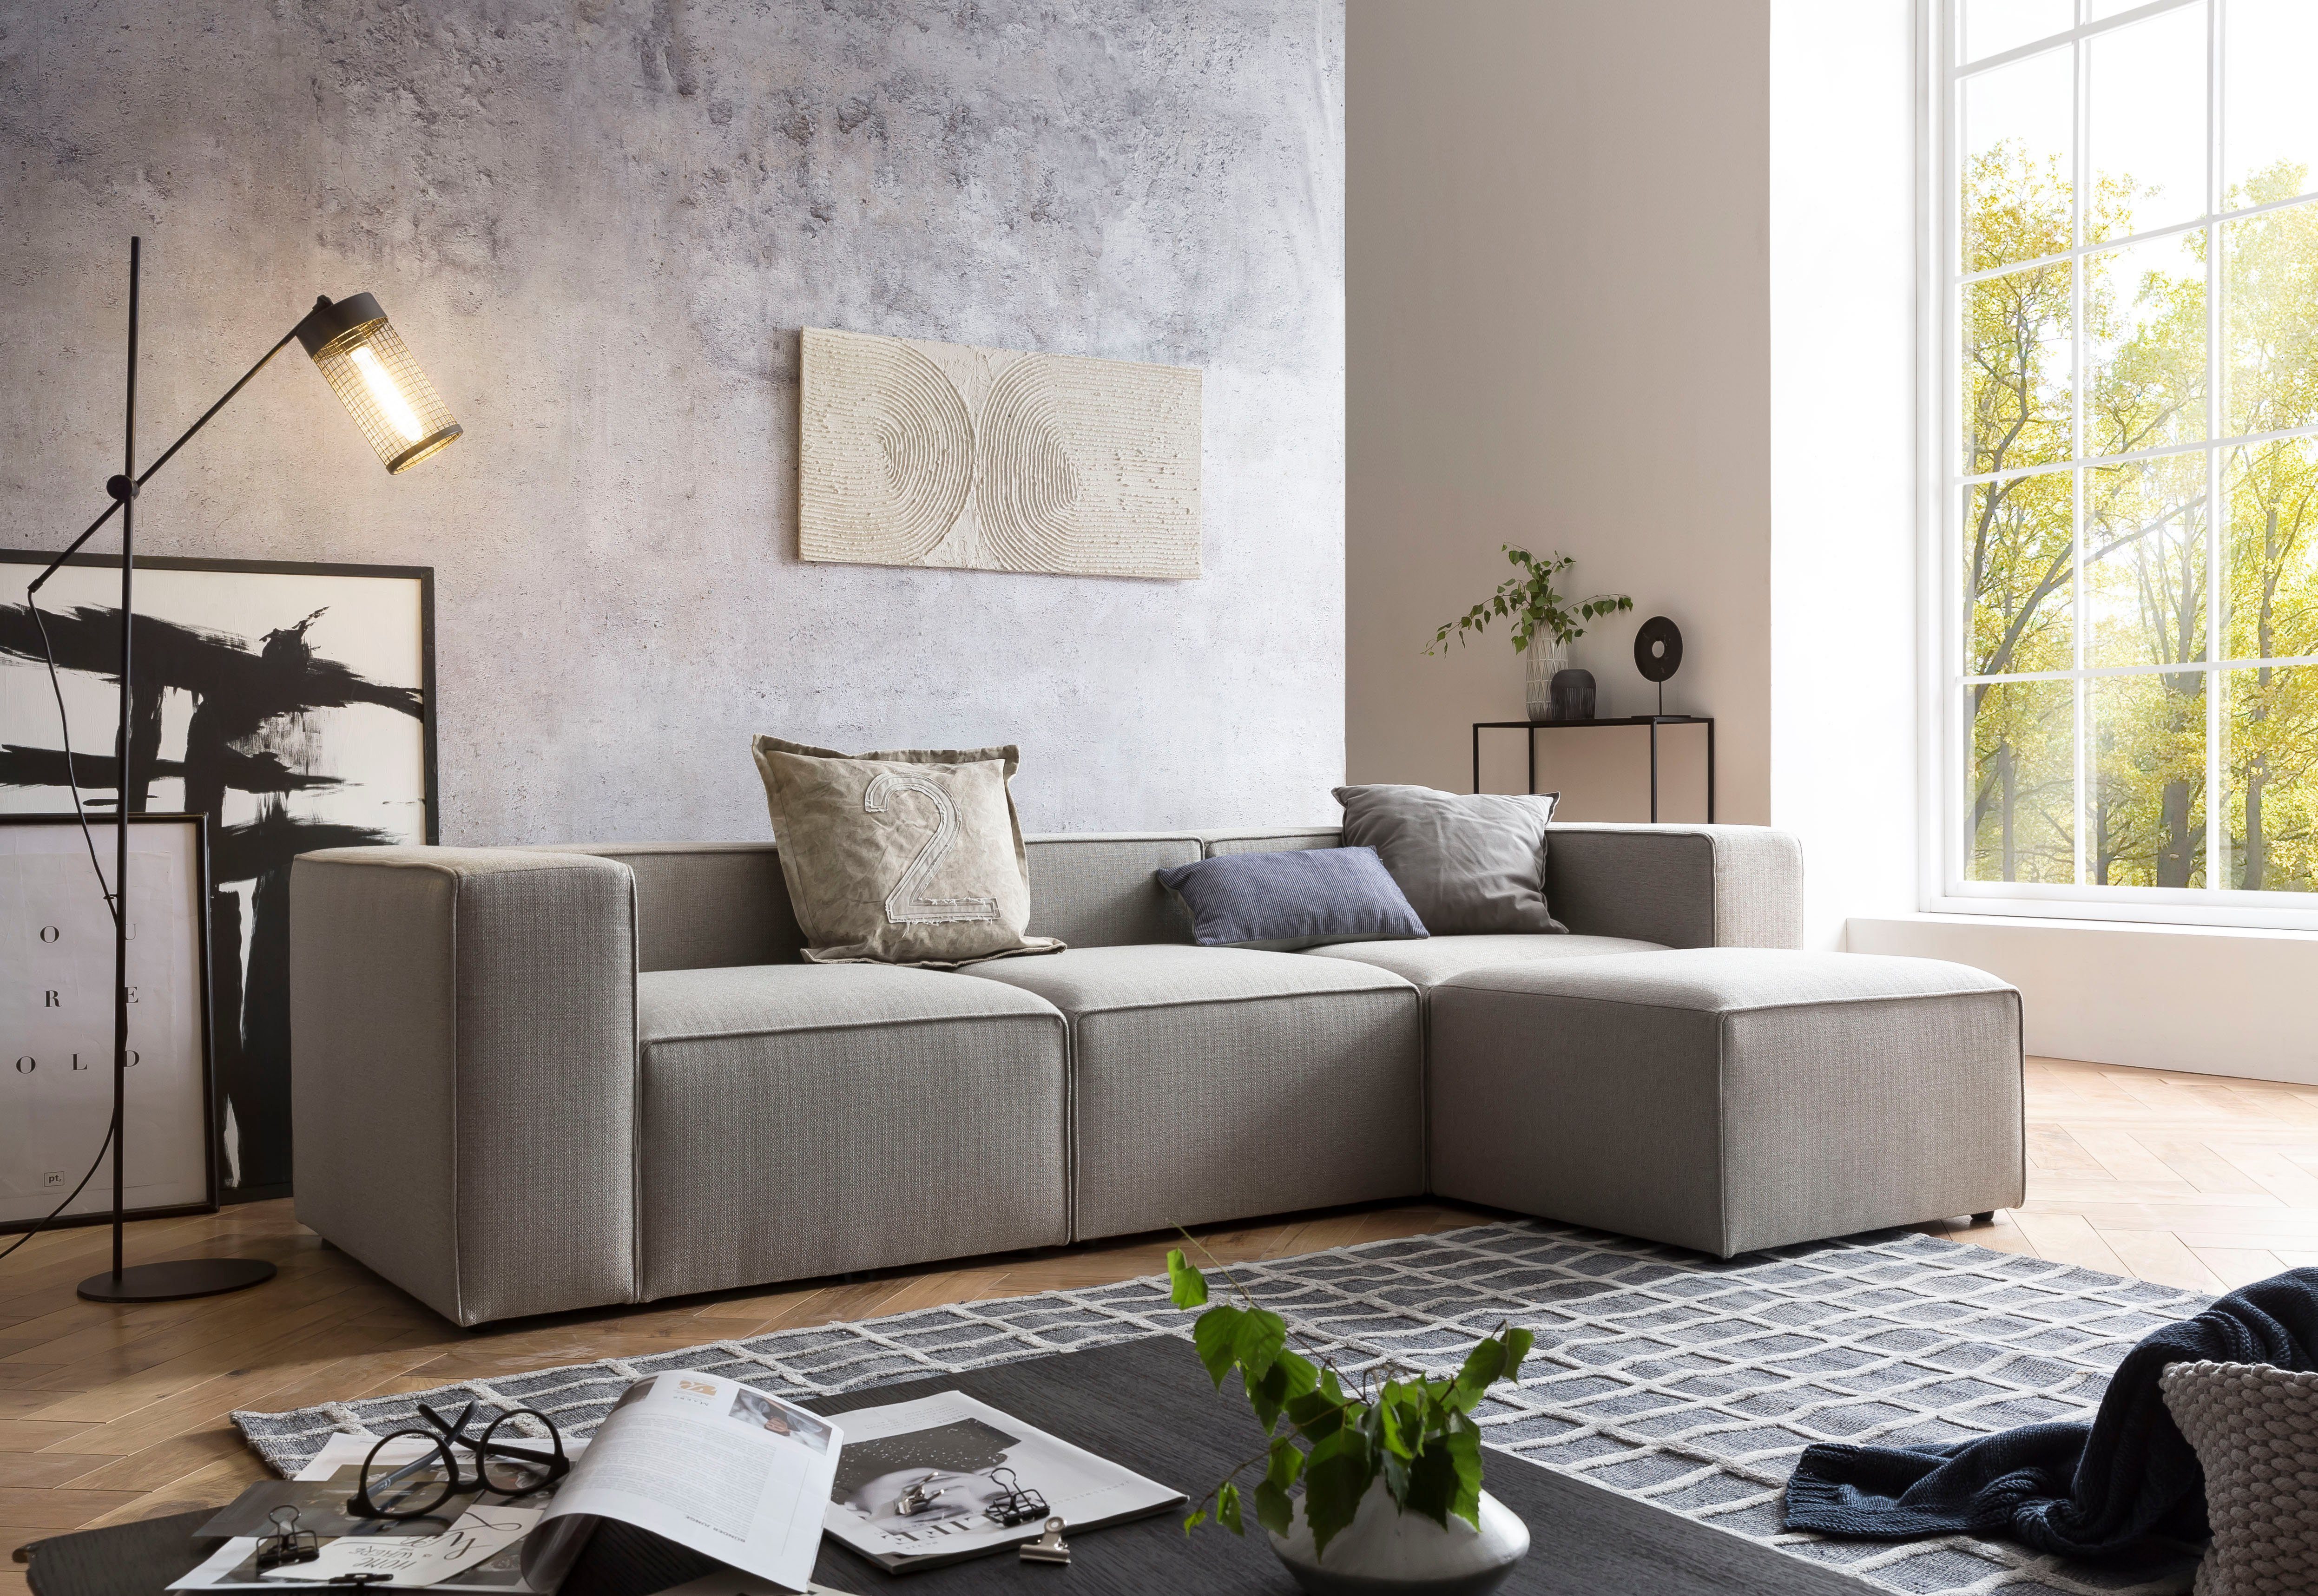 Ewald Schillig brand kombinierbare individuell Hellgrau Milos, 1 Sofa Design Skandinavisches Teile, Sofa Modulares Wohnlandschaft